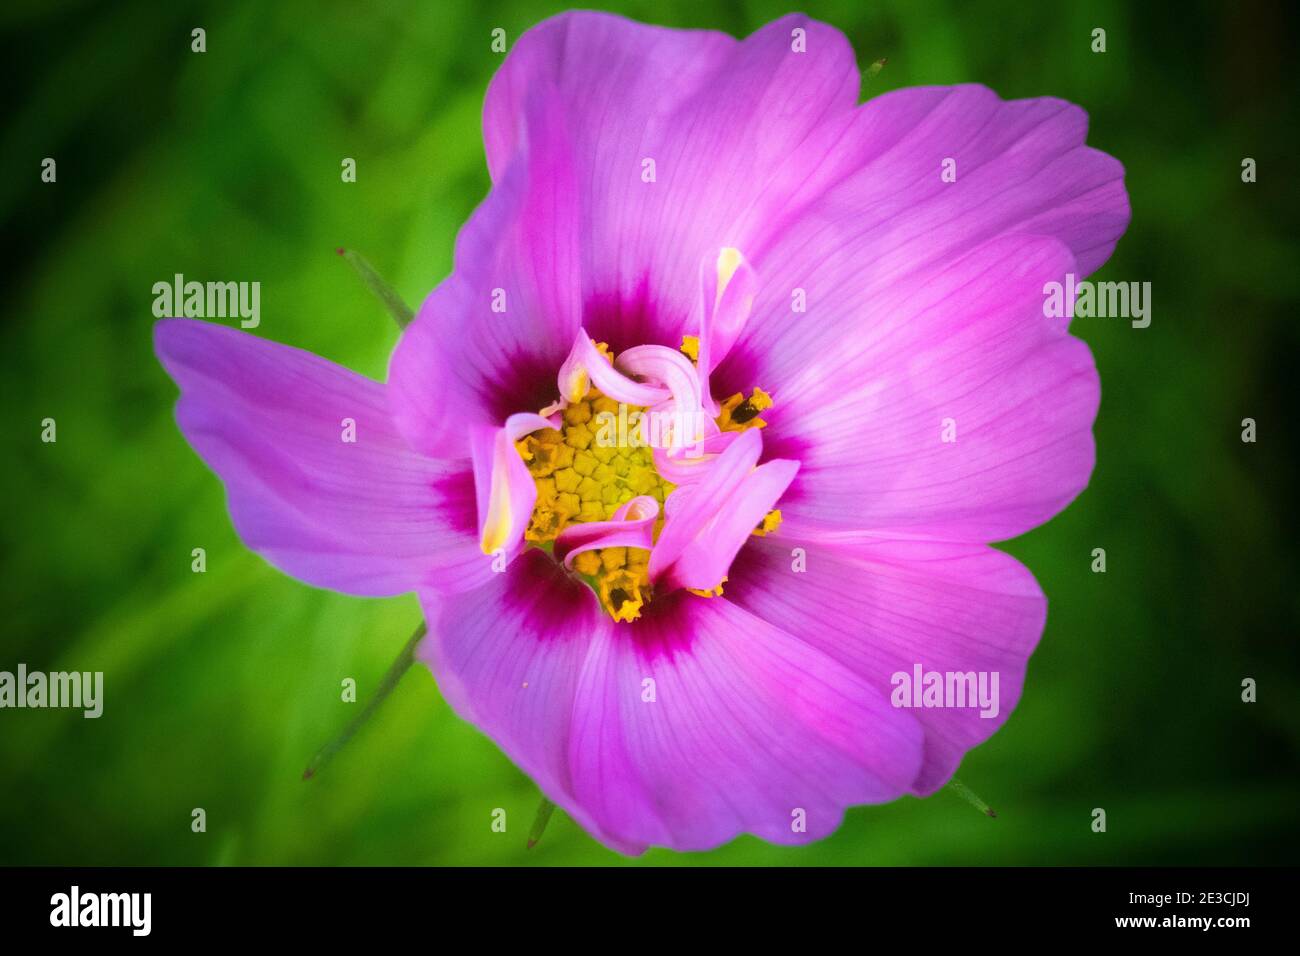 Une fleur rose centrée dans le cadre avec un fond vert. Les structures d'aboiement du pollen sont visibles. Banque D'Images